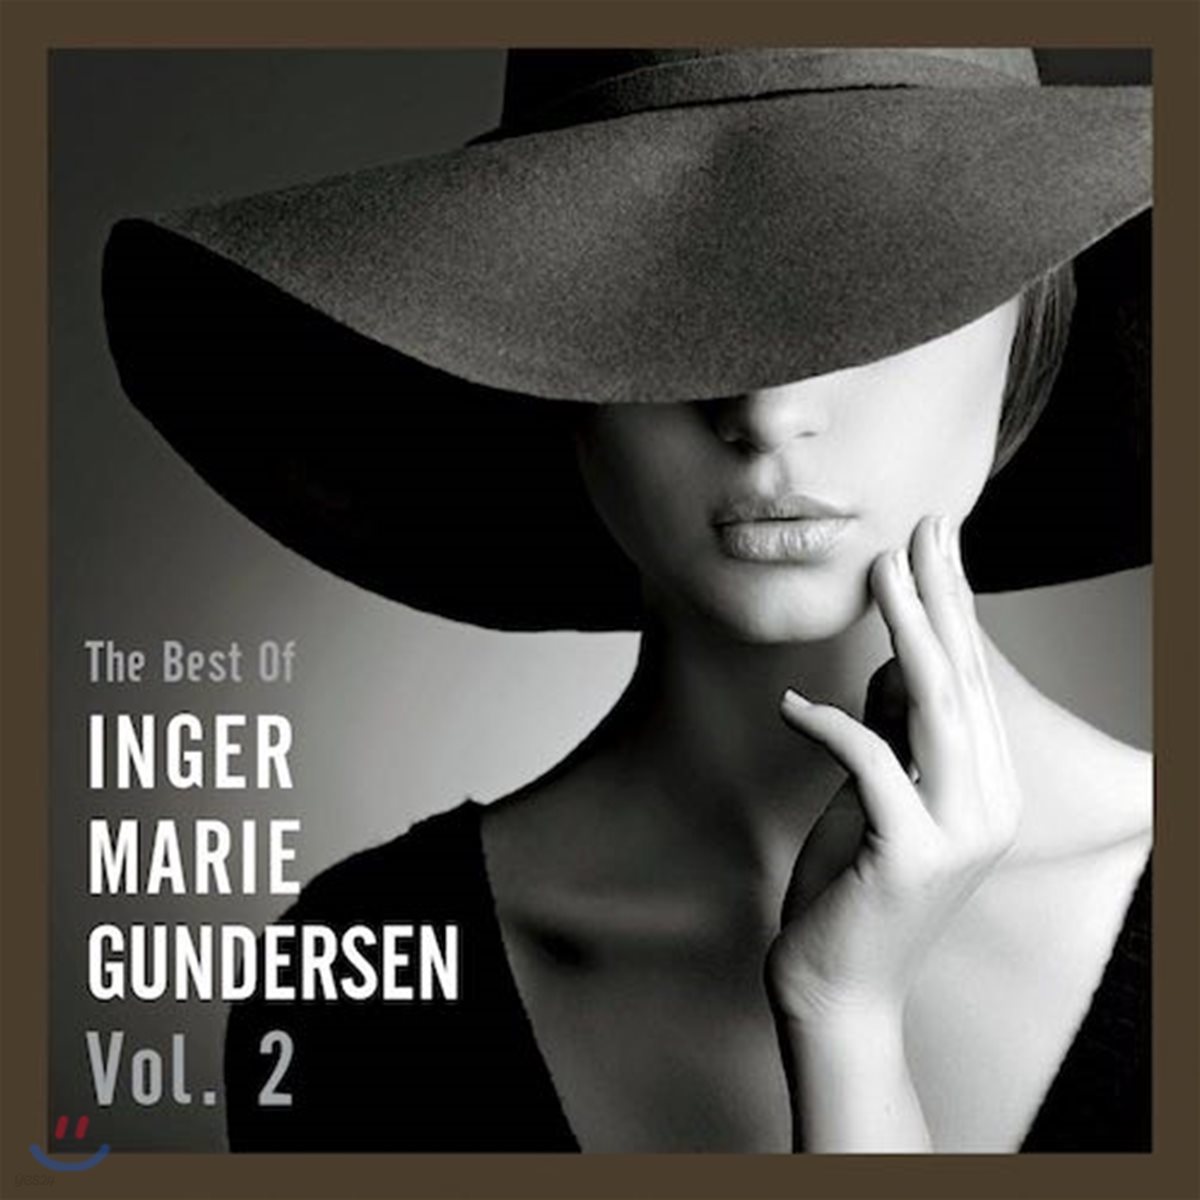 Inger Marie - The Best of Inger Marie Gundersen Vol.2 잉거 마리 베스트 2집